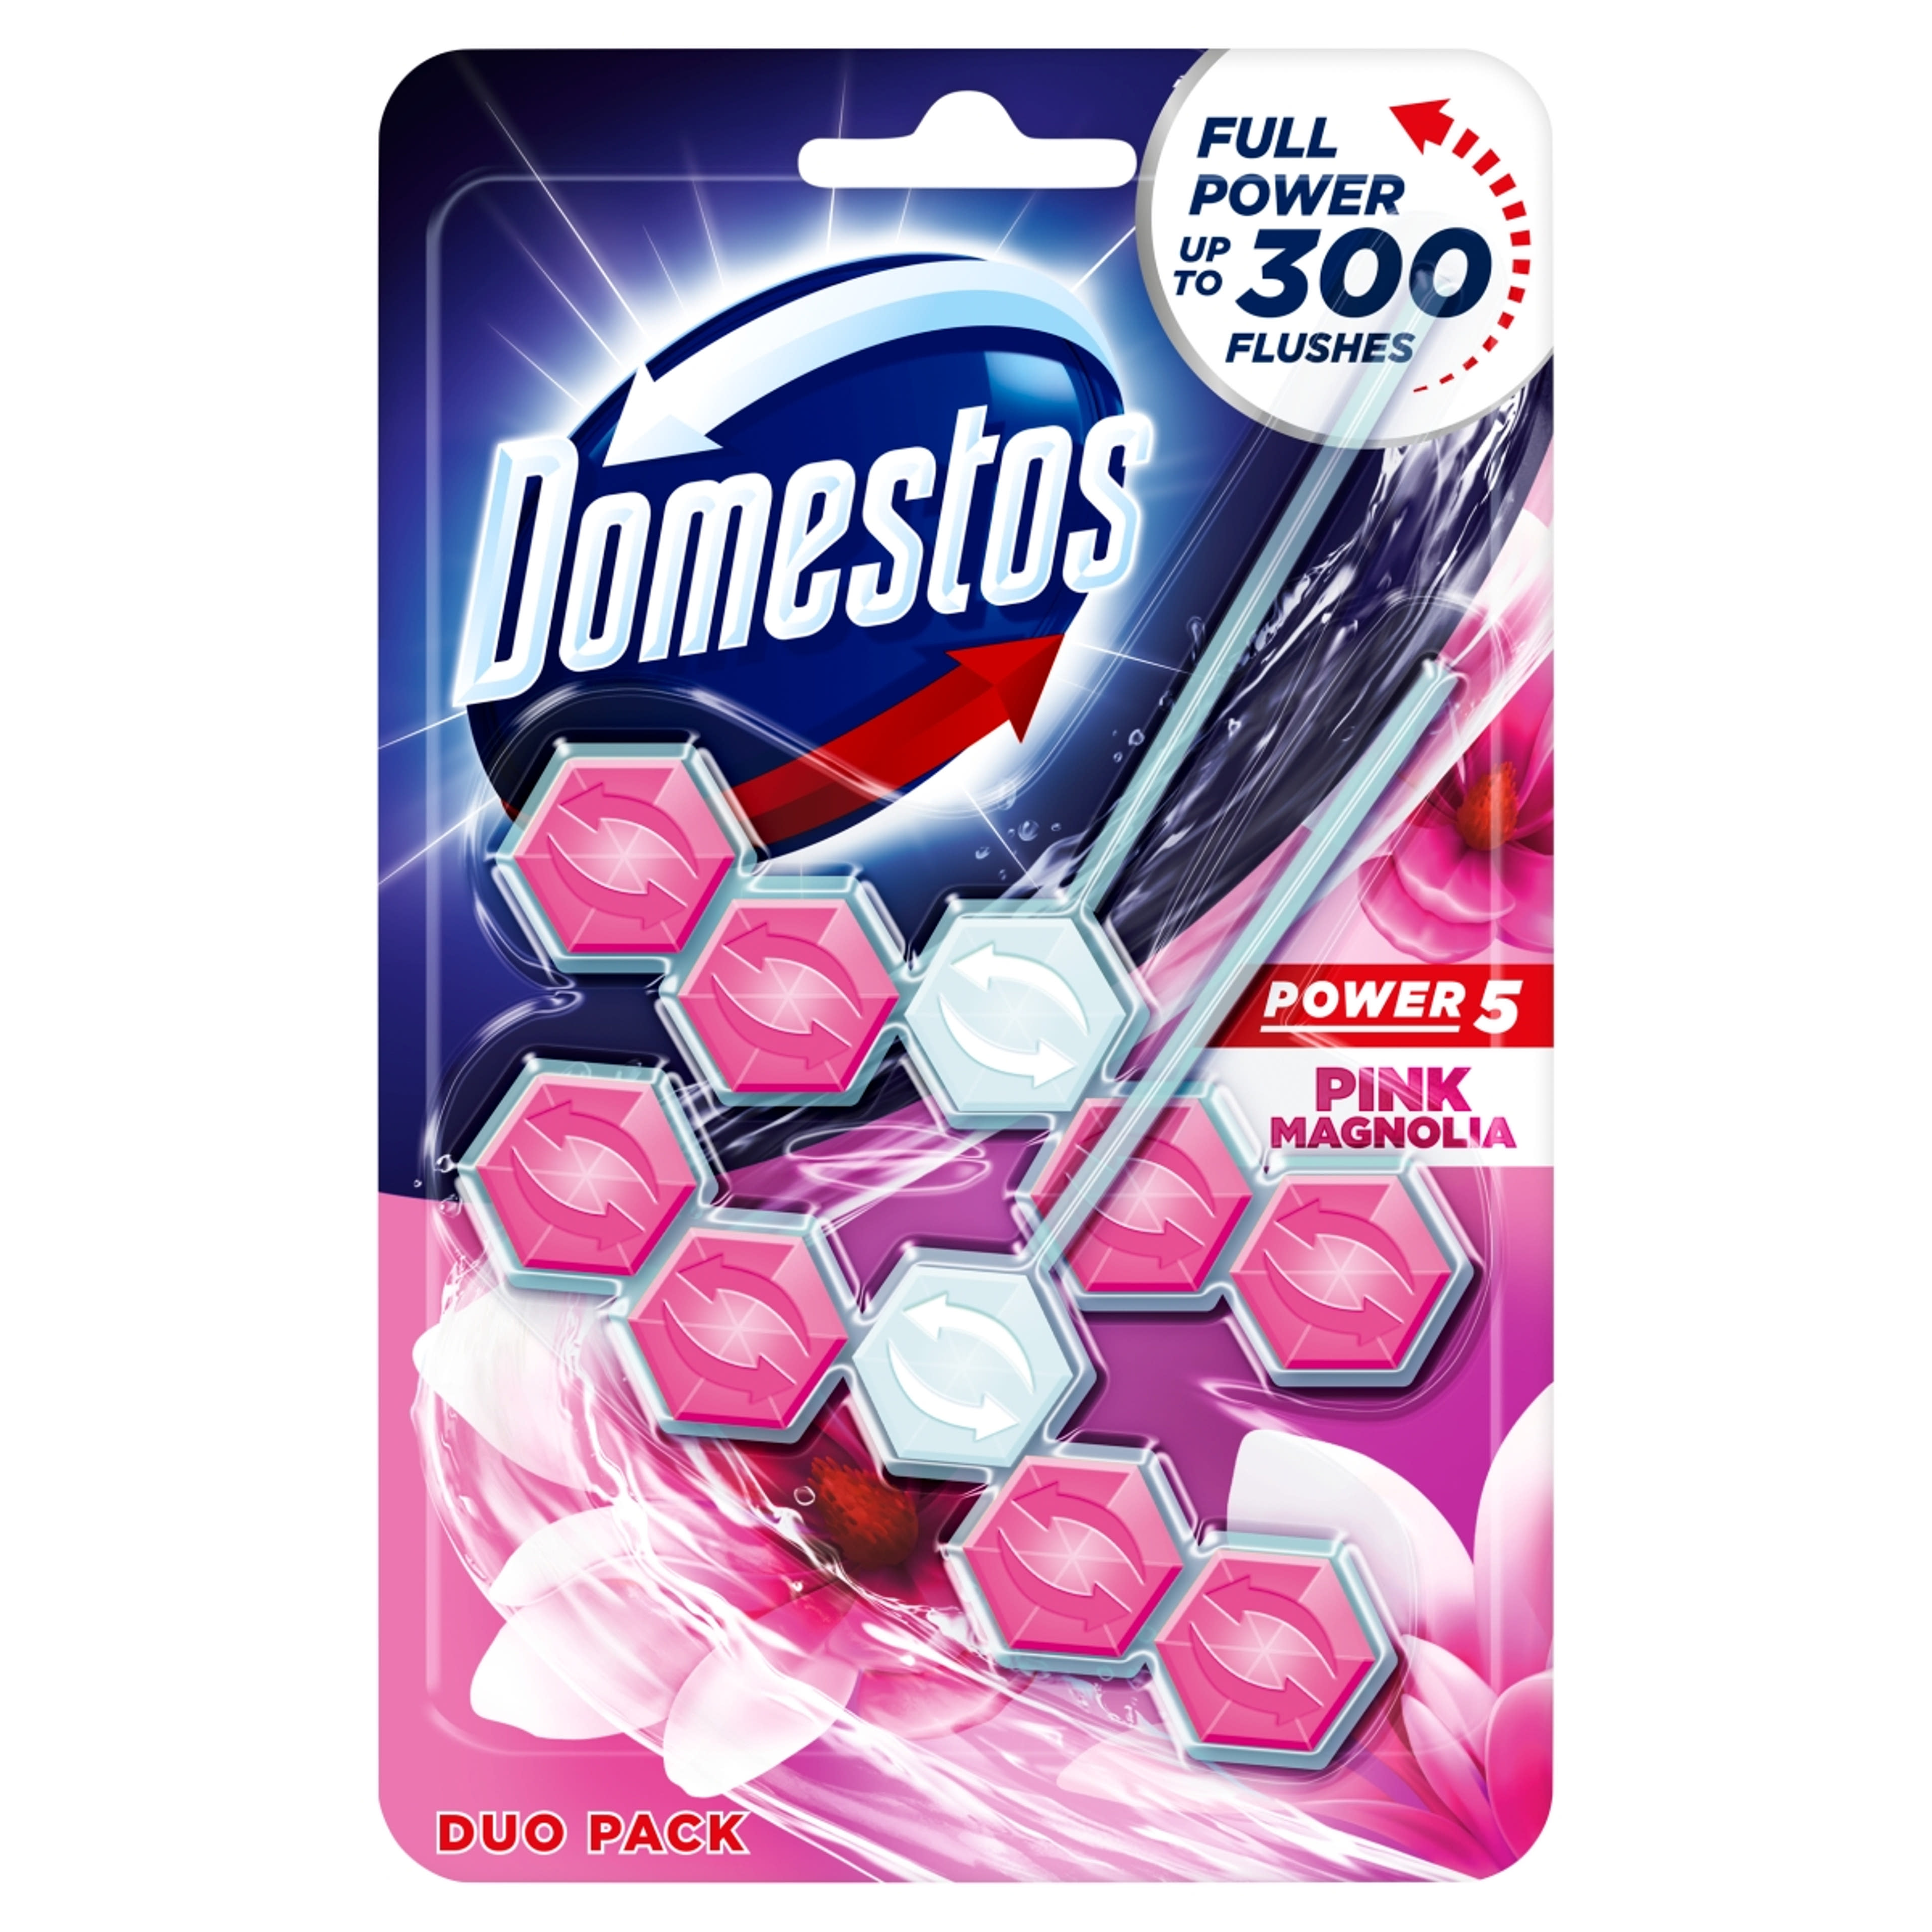 Domestos Power 5 Pink Magnolia WC-Frissítő (2x55 g) - 110 g